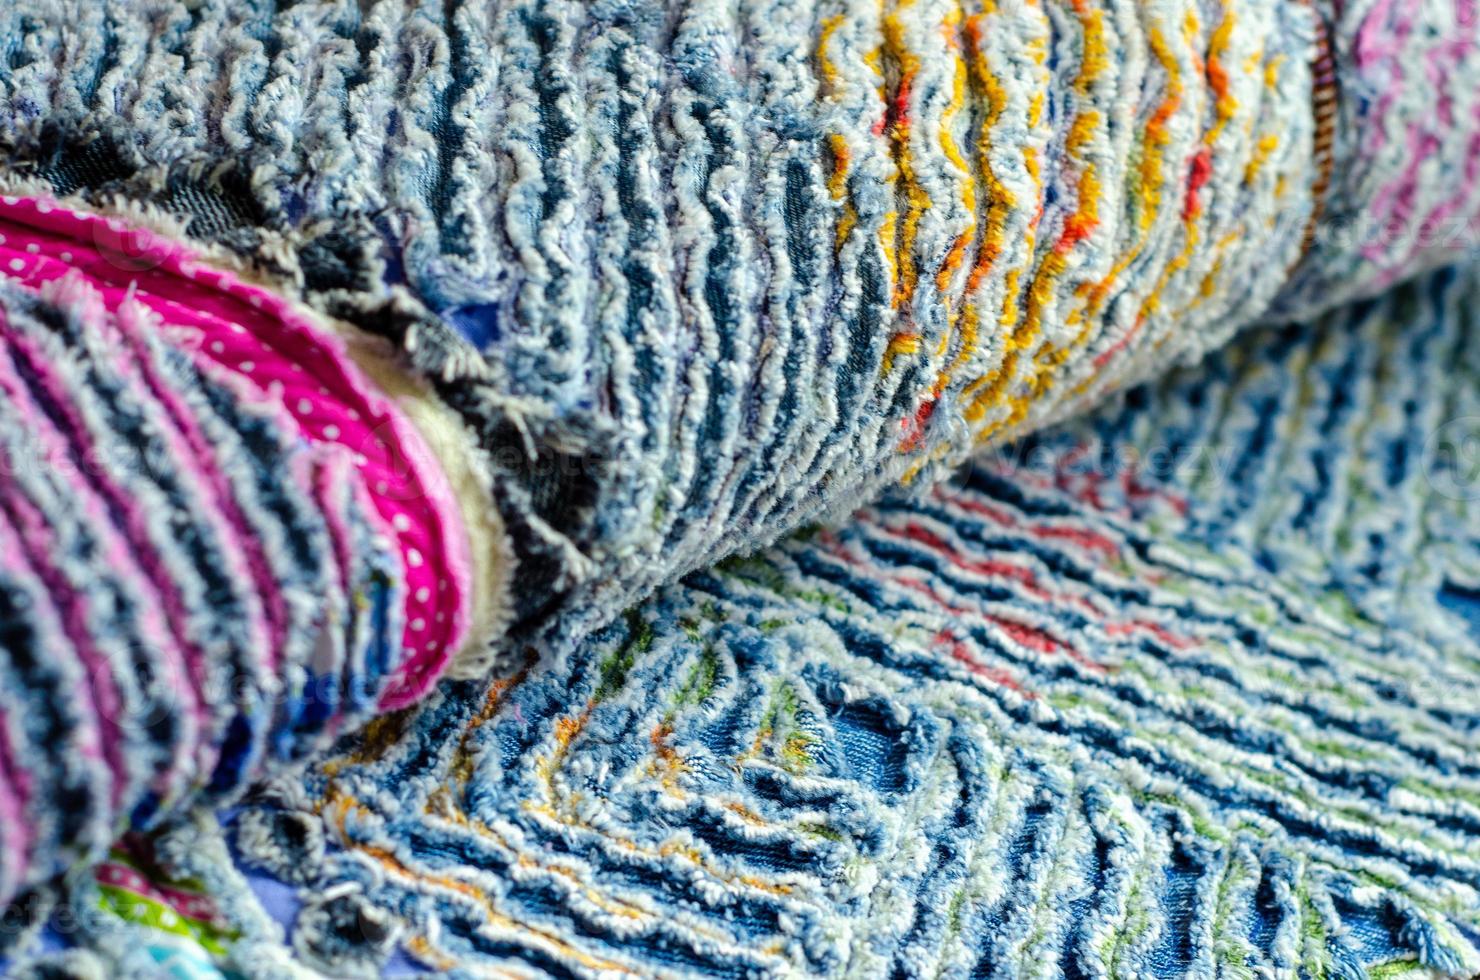 denim en katoen chenille tapijt, textuur pluizig foto